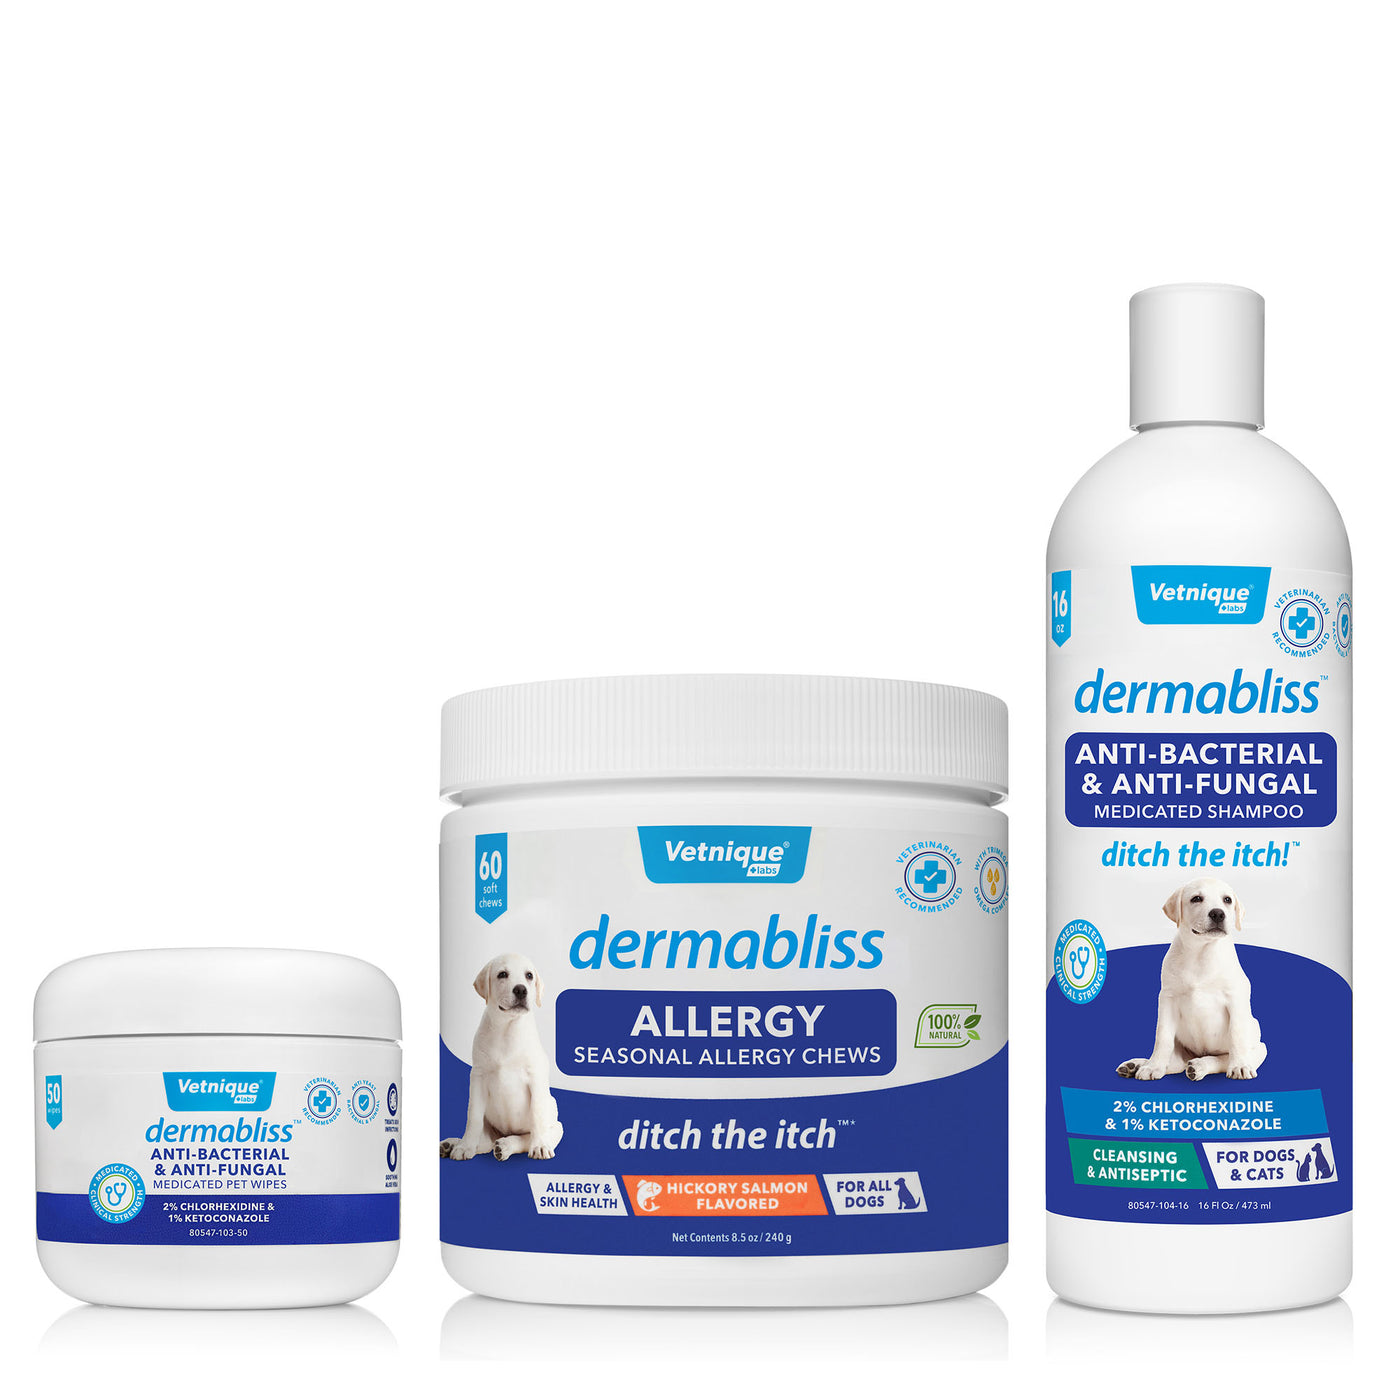 Dermabliss™ Seasonal Allergy Bundle - Save 15%!